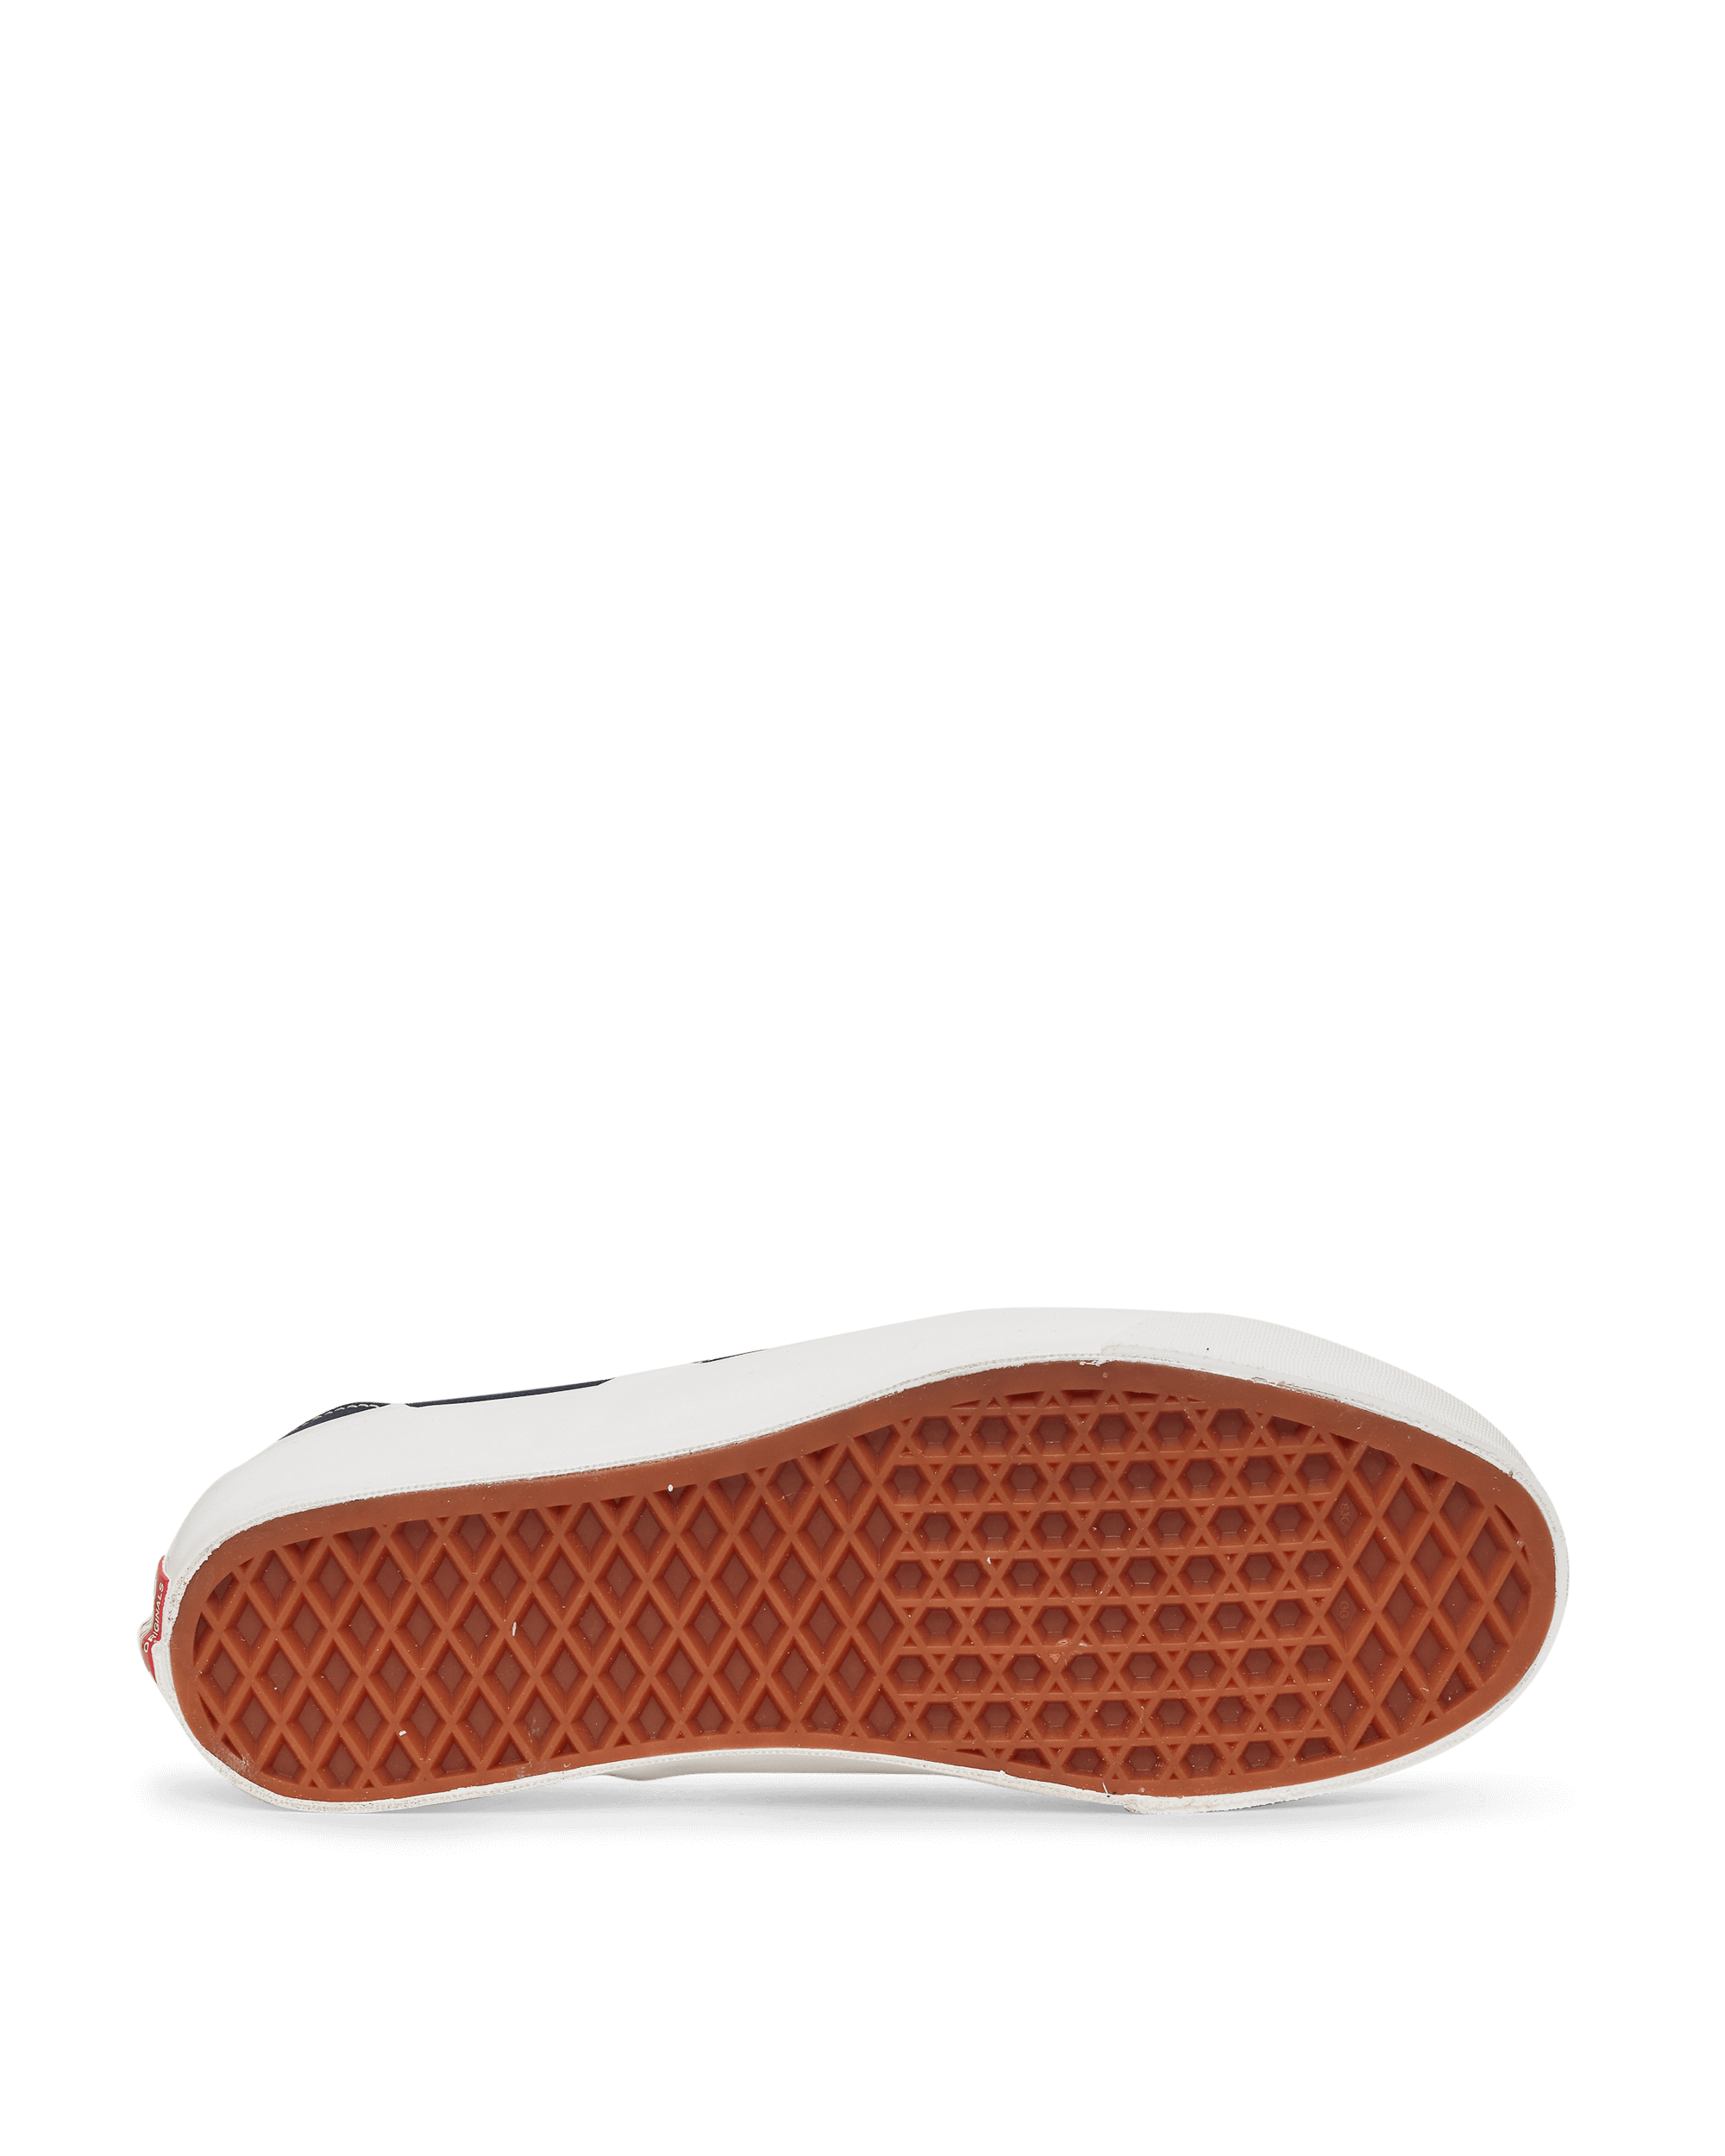 Vans Ua Og Classic Slip-On Lx Navy Sneakers Slip-On VN0A45JK1X71